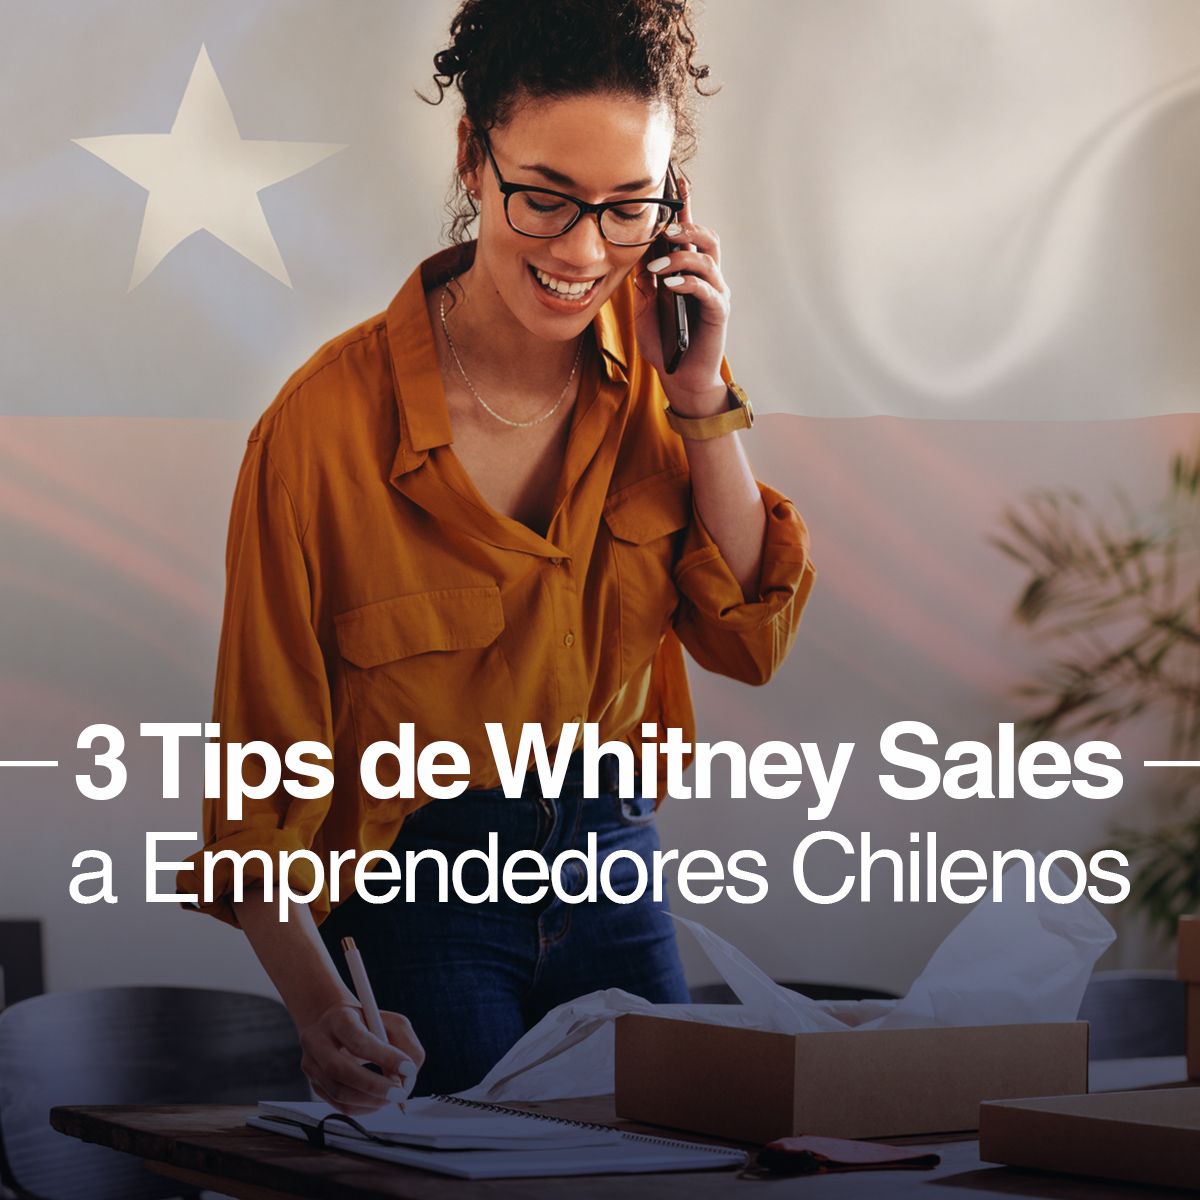 3 Tips de Whitney Sales a Emprendedores Chilenos